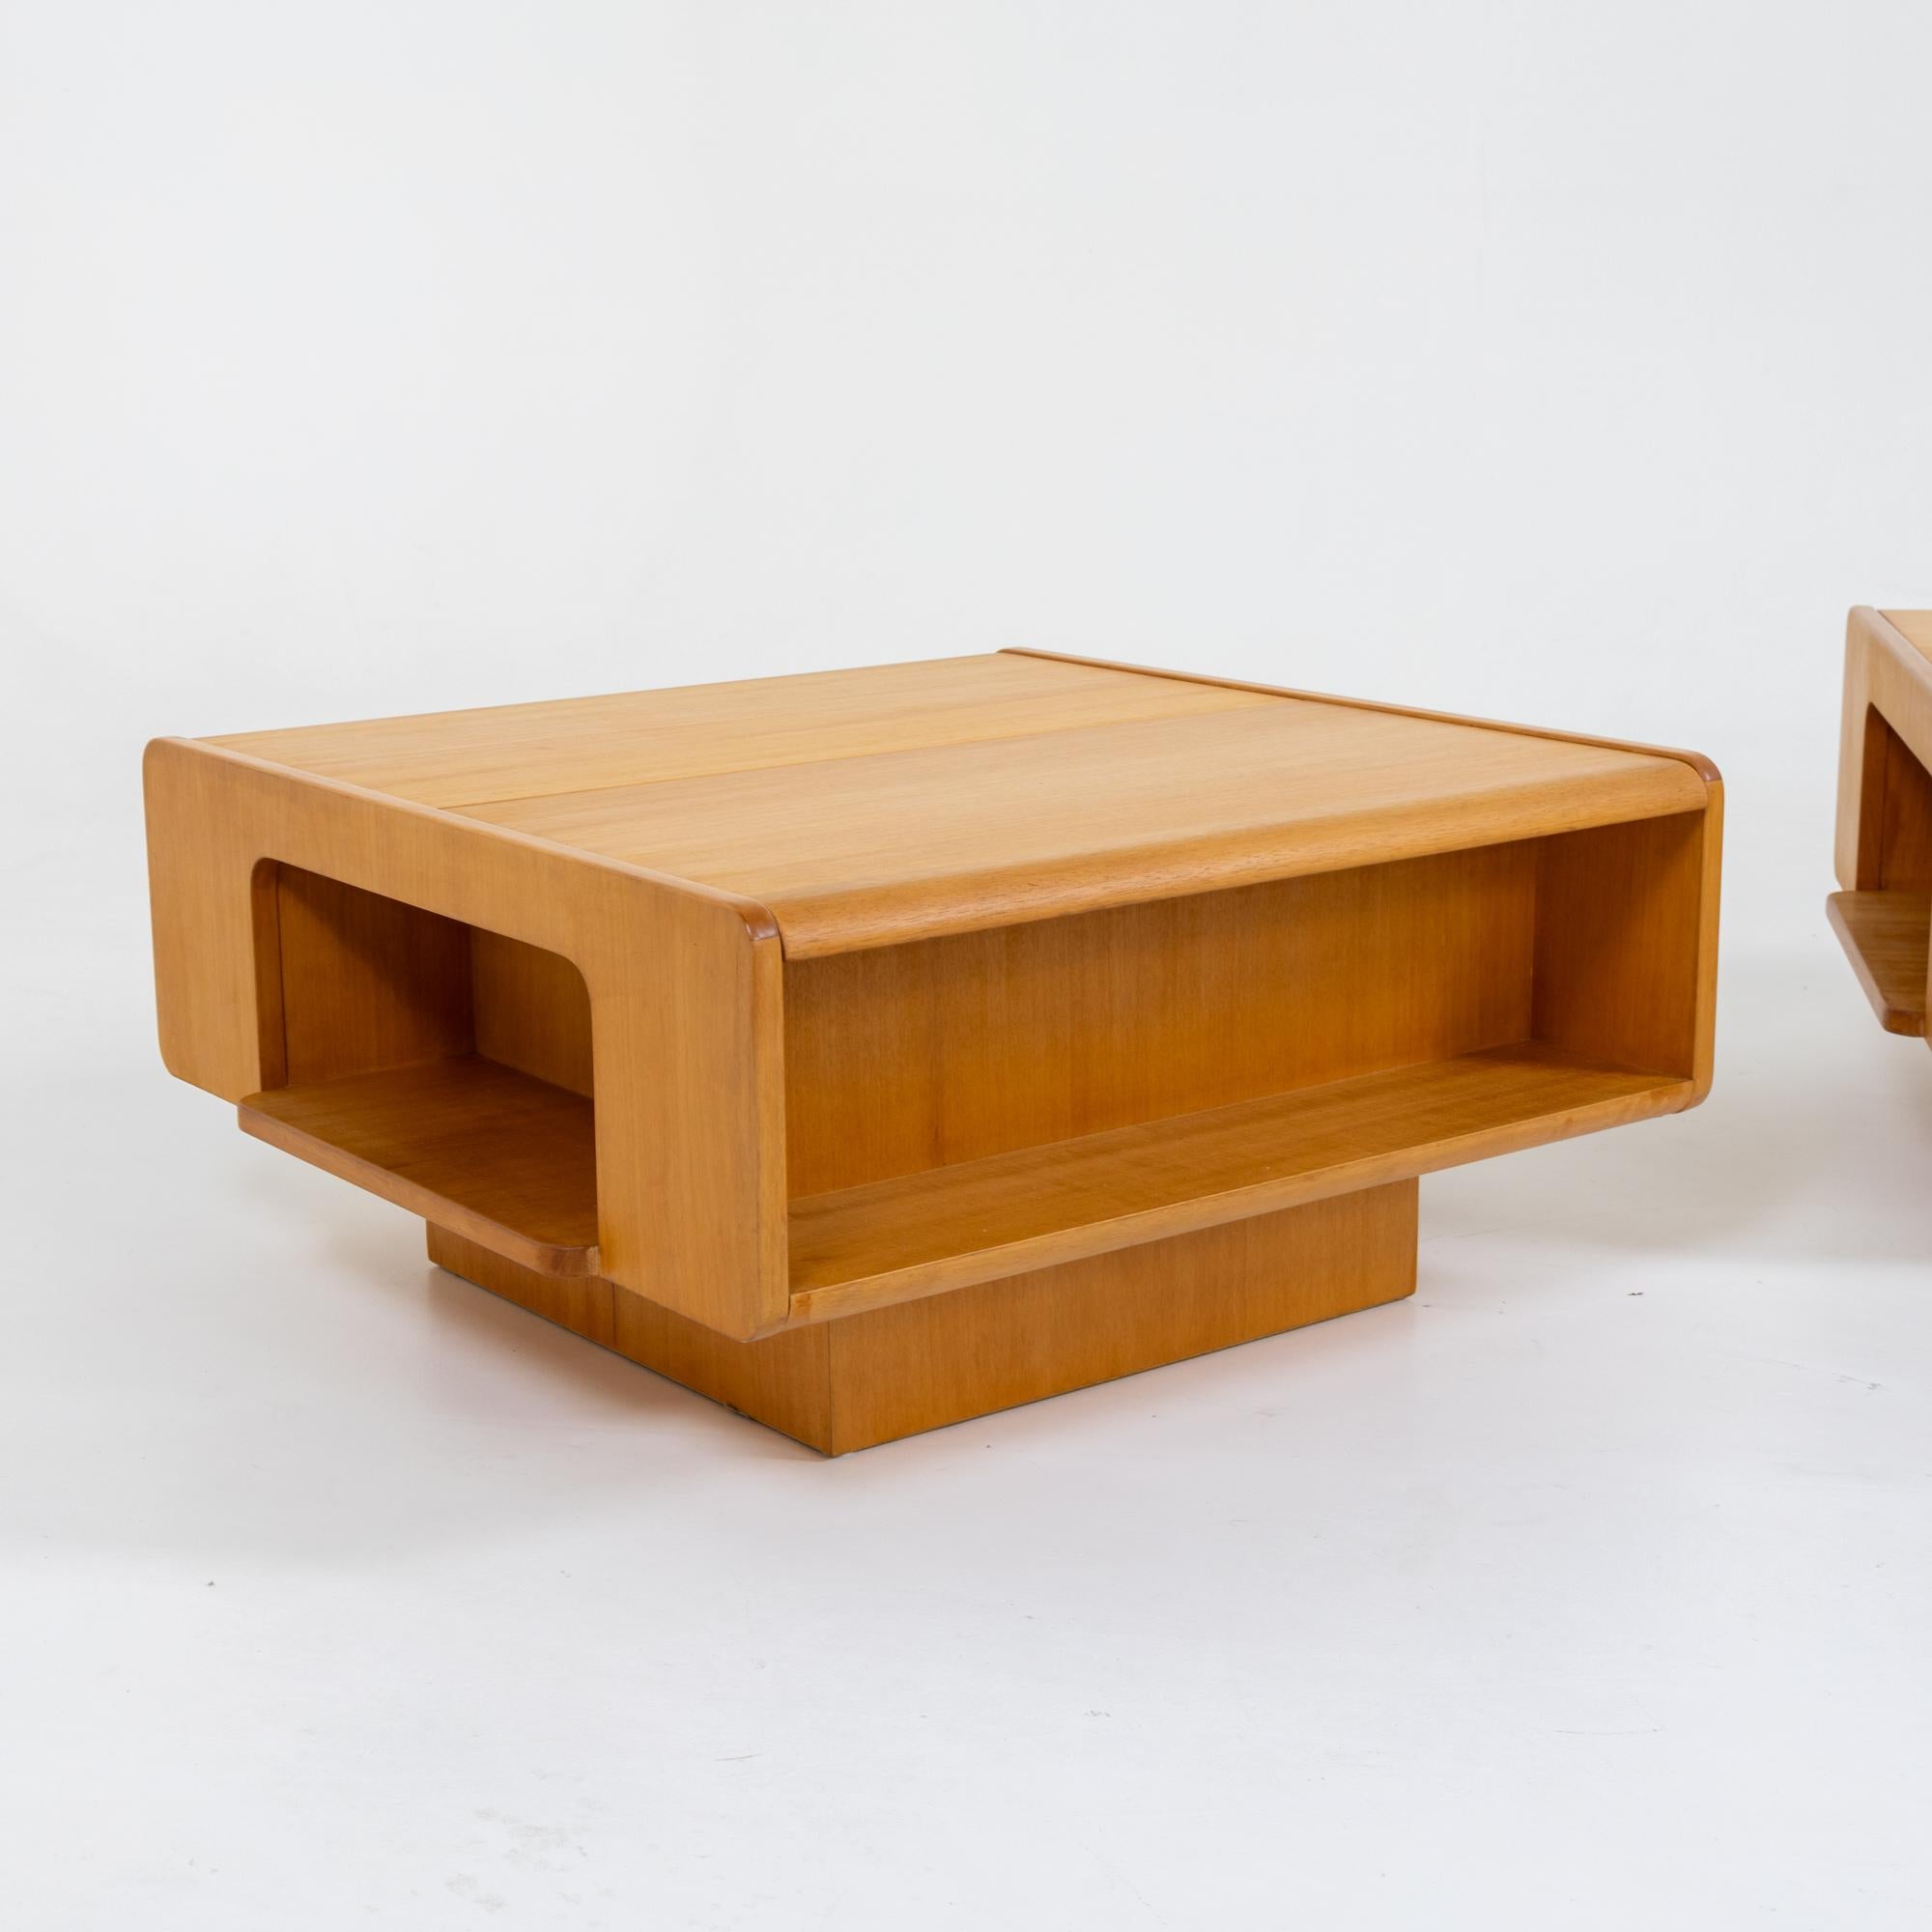 Paire de tables basses en bois avec plateau coulissant et espace de rangement intérieur. Les carcasses rectangulaires sont dotées d'un espace de rangement supplémentaire sur les côtés et offrent une vue intéressante de tous les côtés.